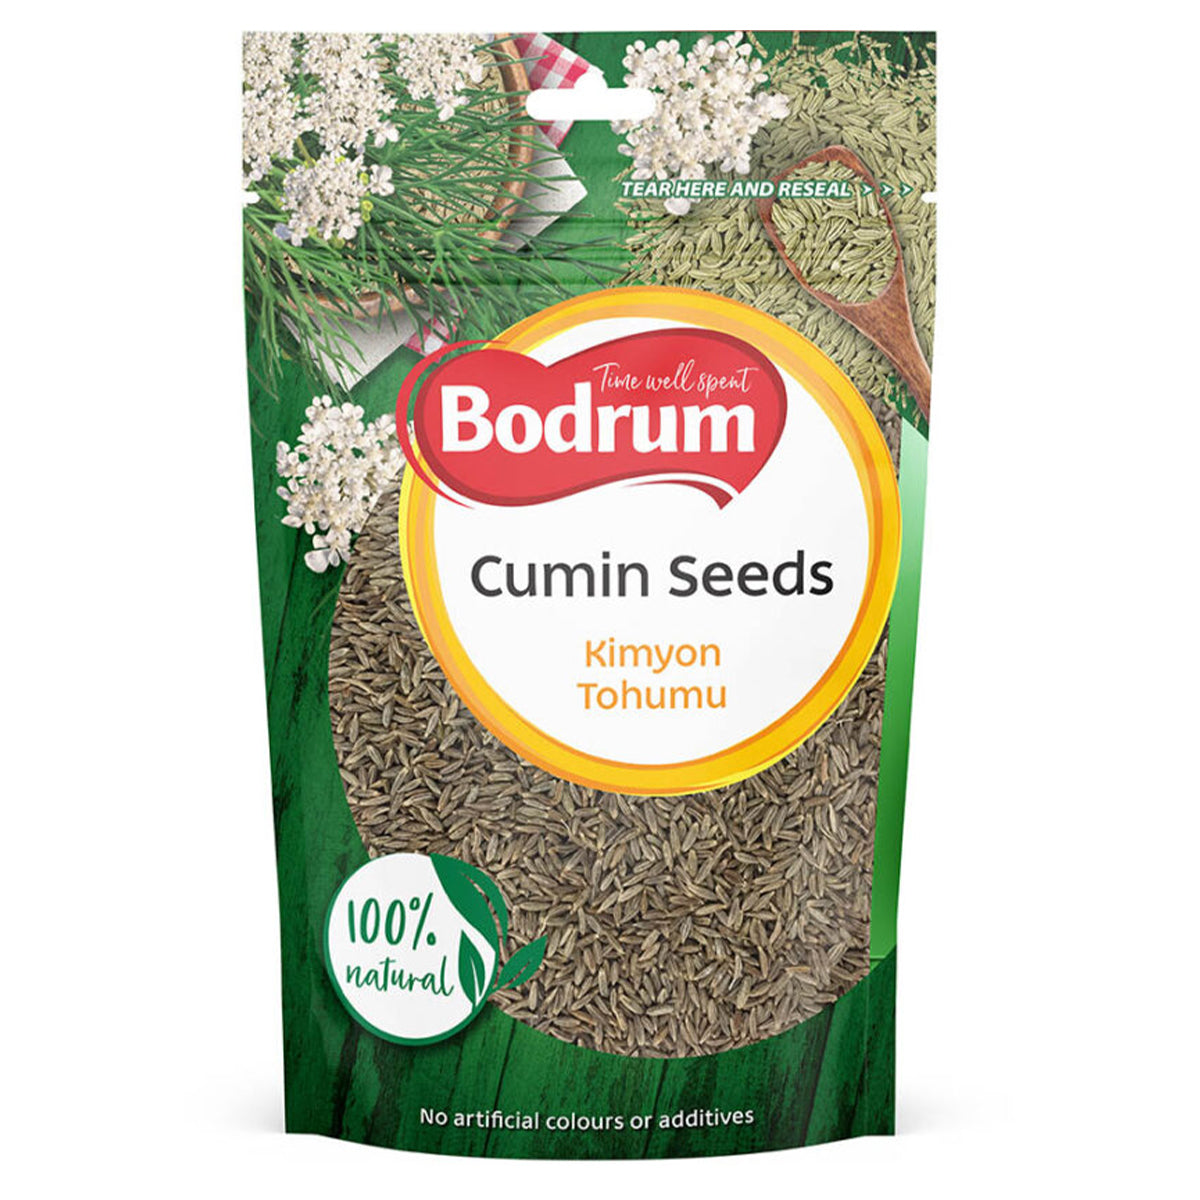 Bodrum - Cumin Seeds - 100g cumin seeds.